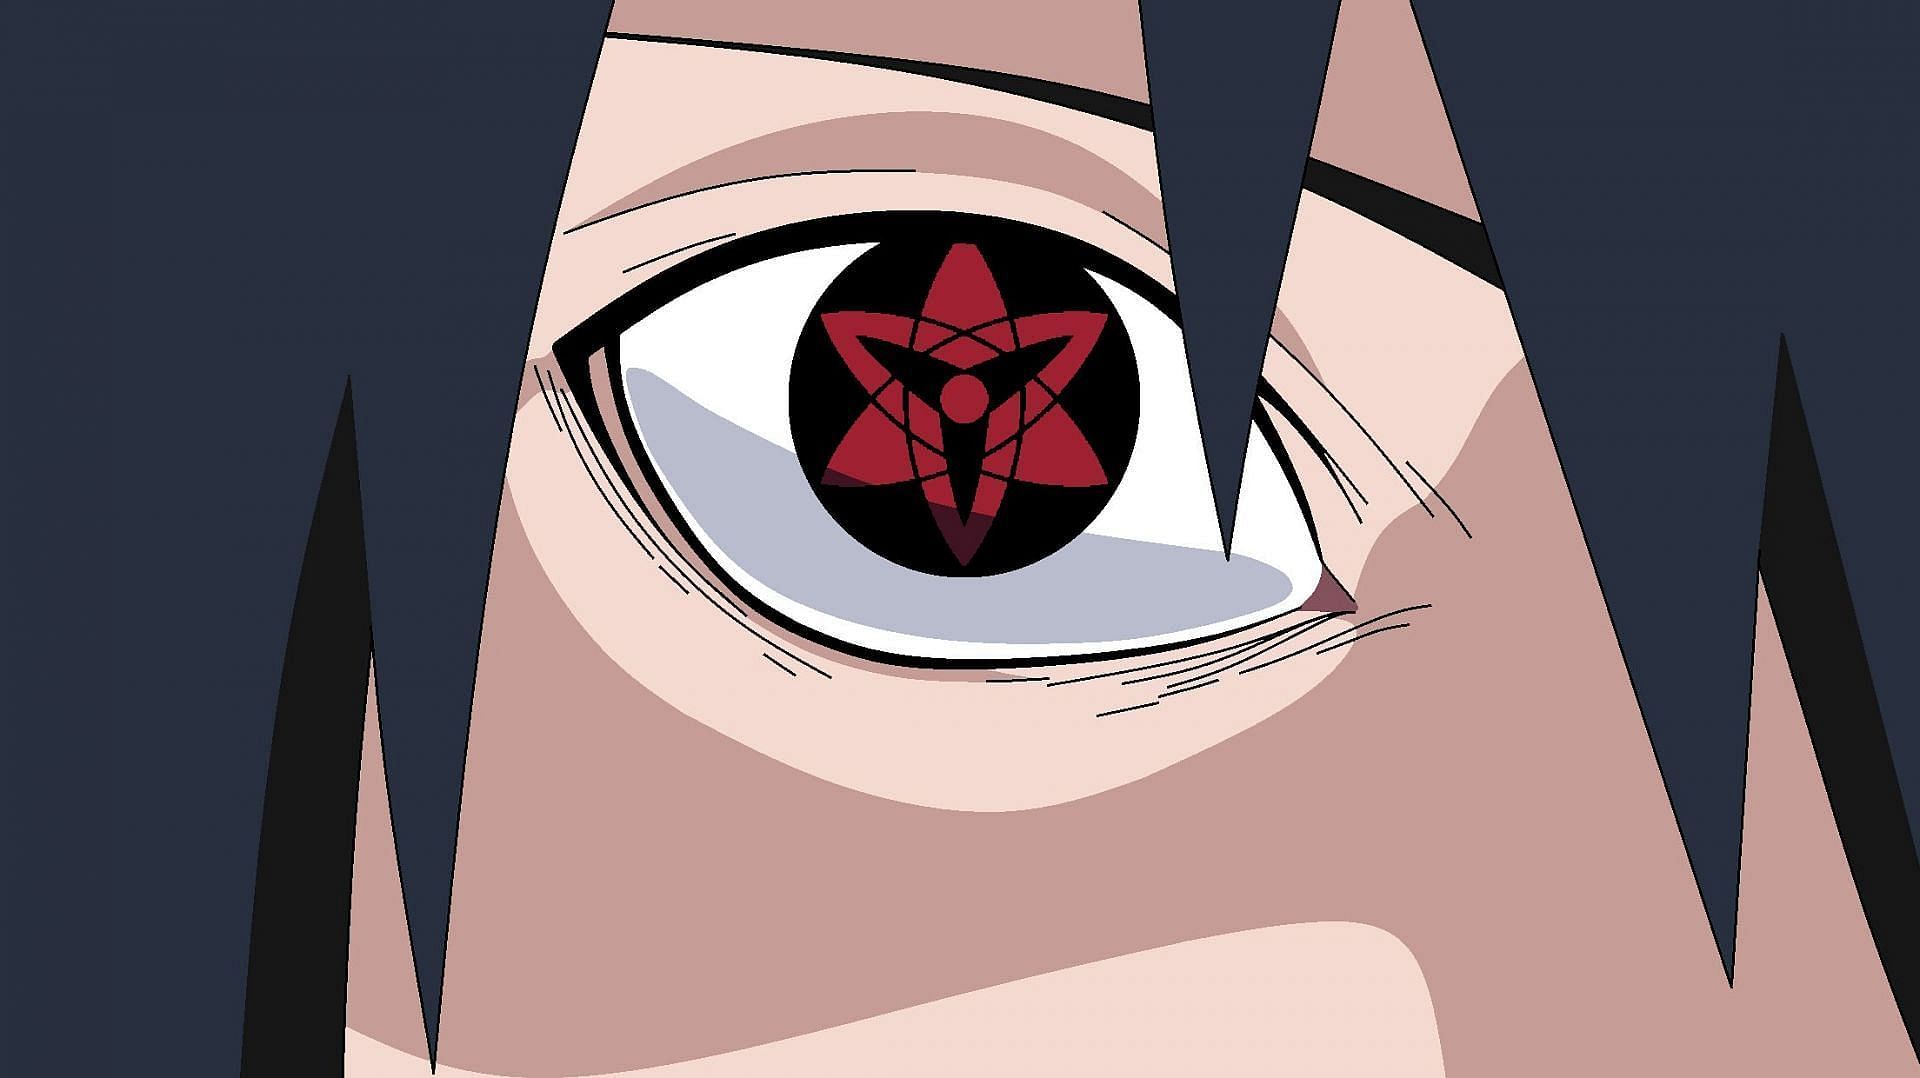 The Sharingan eye (Image via Masashi Kishimoto/Shueisha, Viz, Naruto)